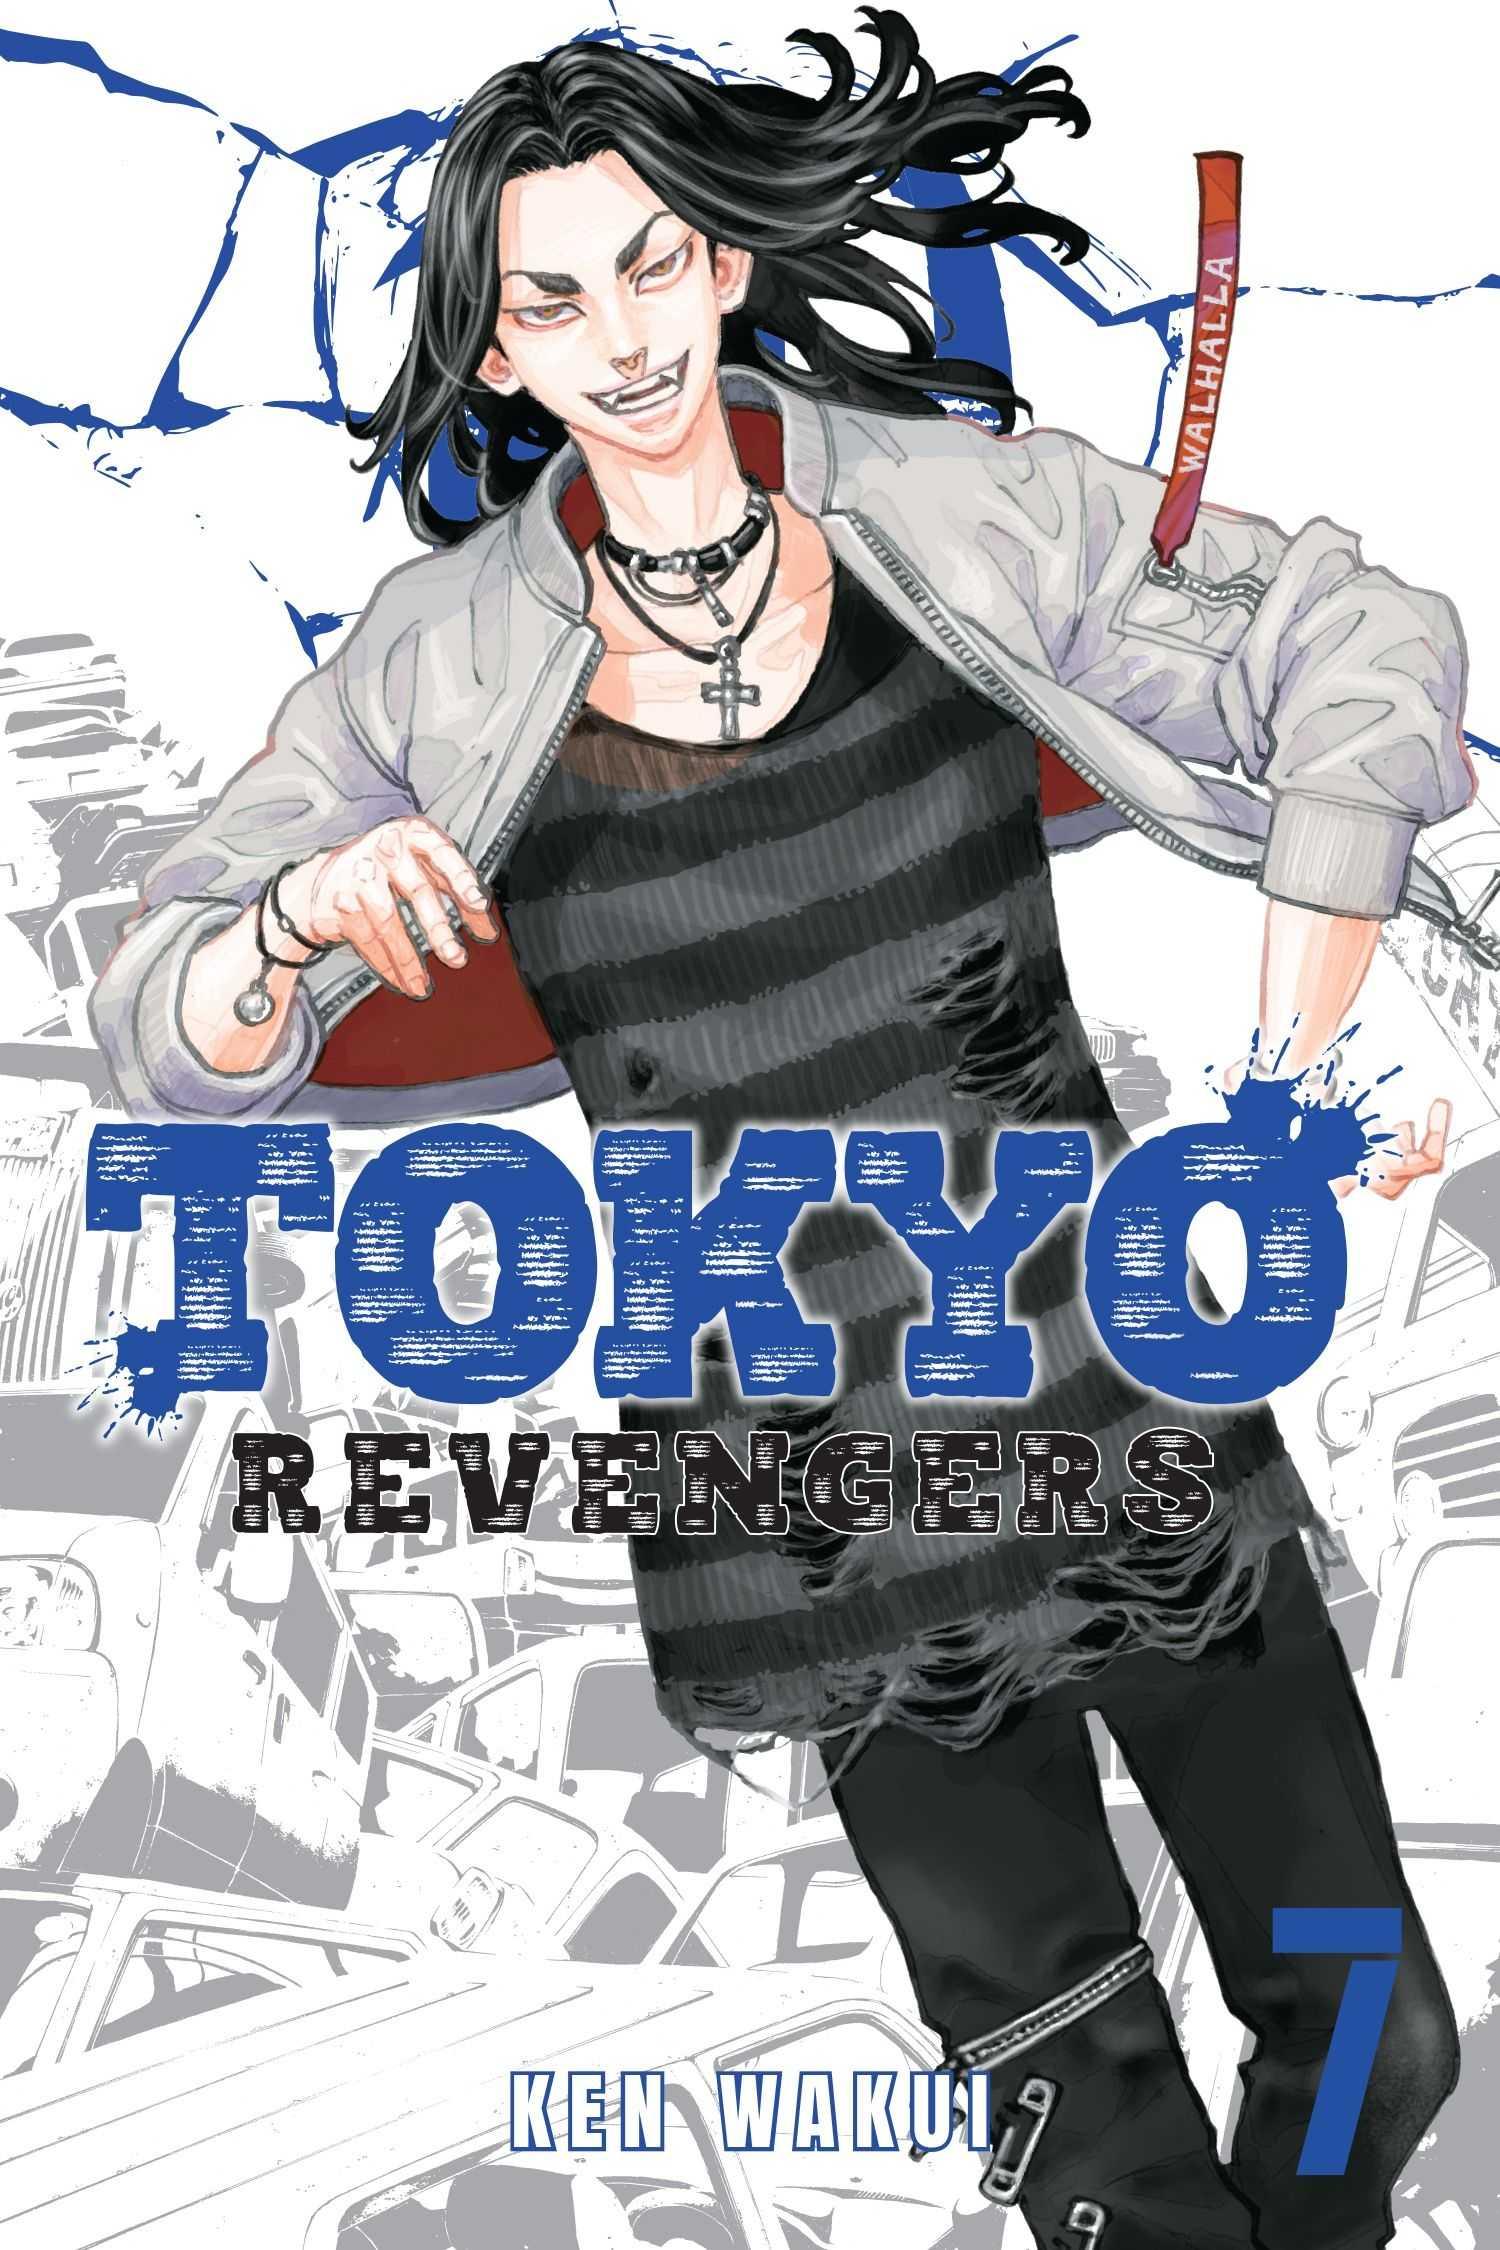 1500 x 2250 · jpeg - Tokyo Revengers Wallpaper 4K / Iphone Tokyo Revengers Wallpaper ...